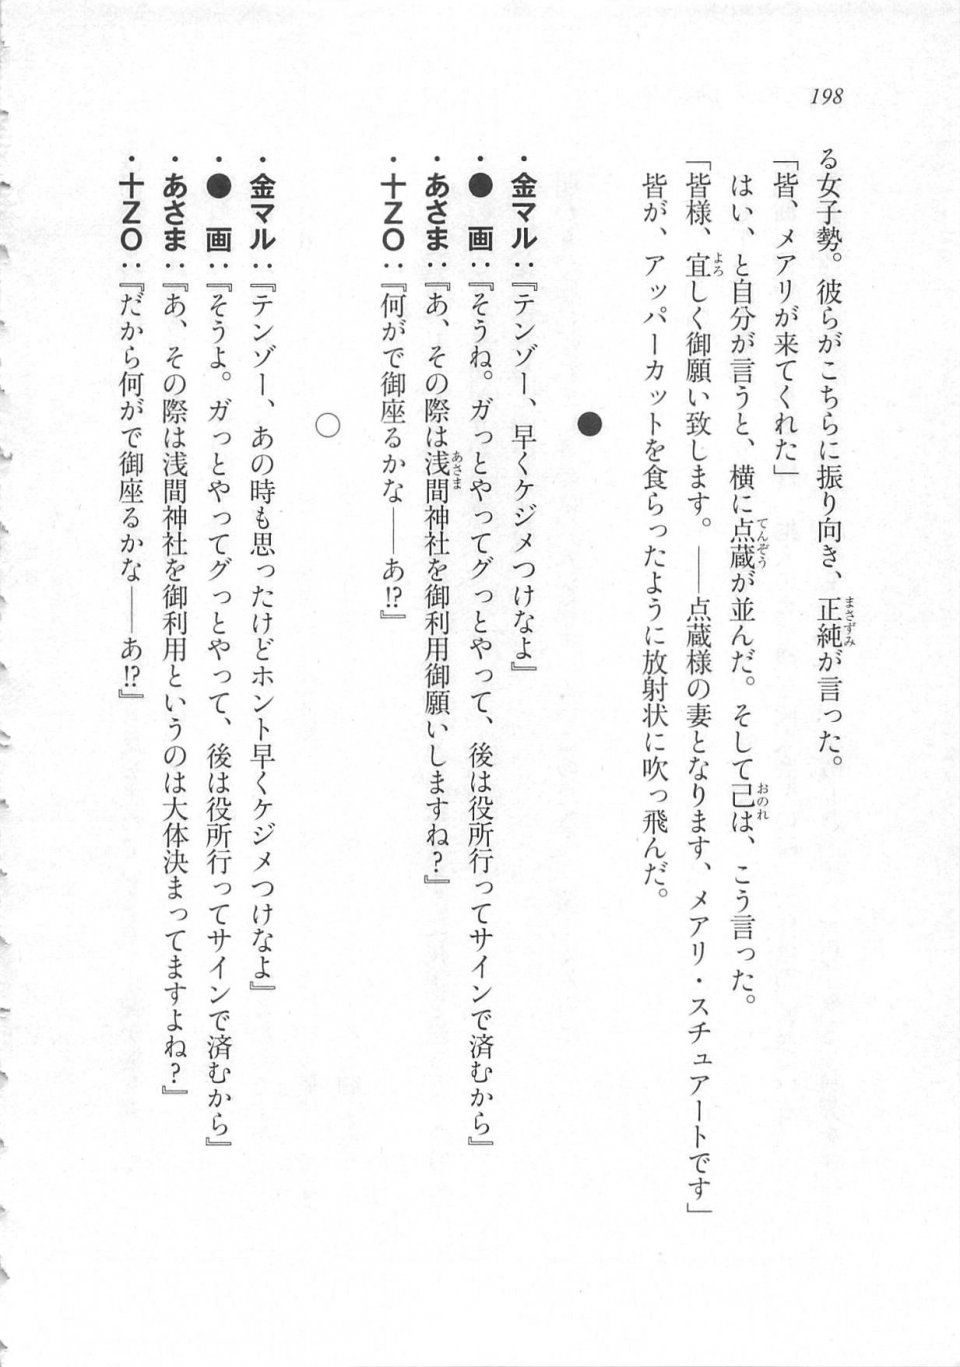 Kyoukai Senjou no Horizon LN Sidestory Vol 3 - Photo #202